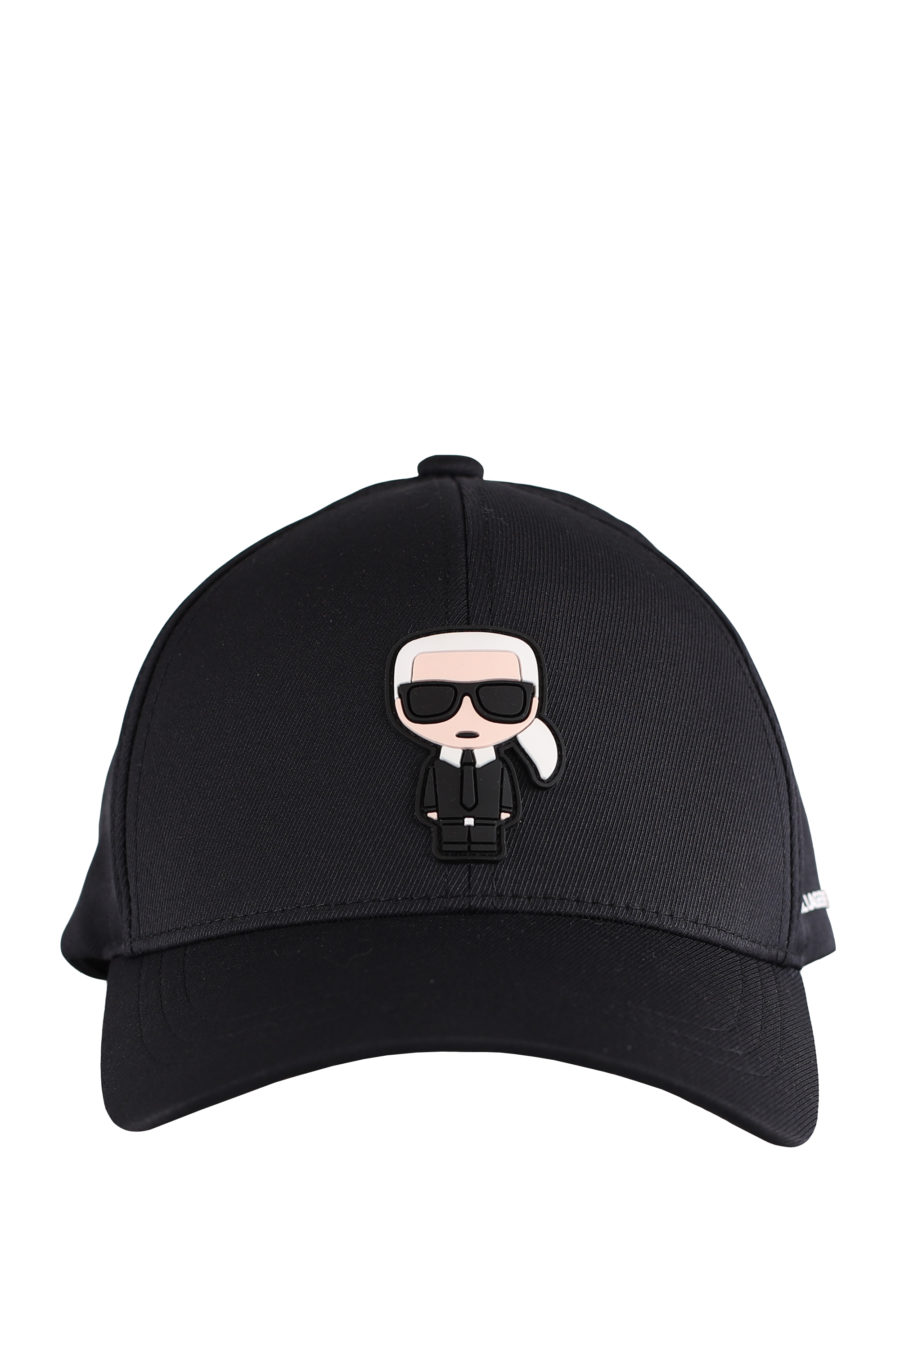 Gorra negra con logotipo engomado "Karl" - IMG 9590